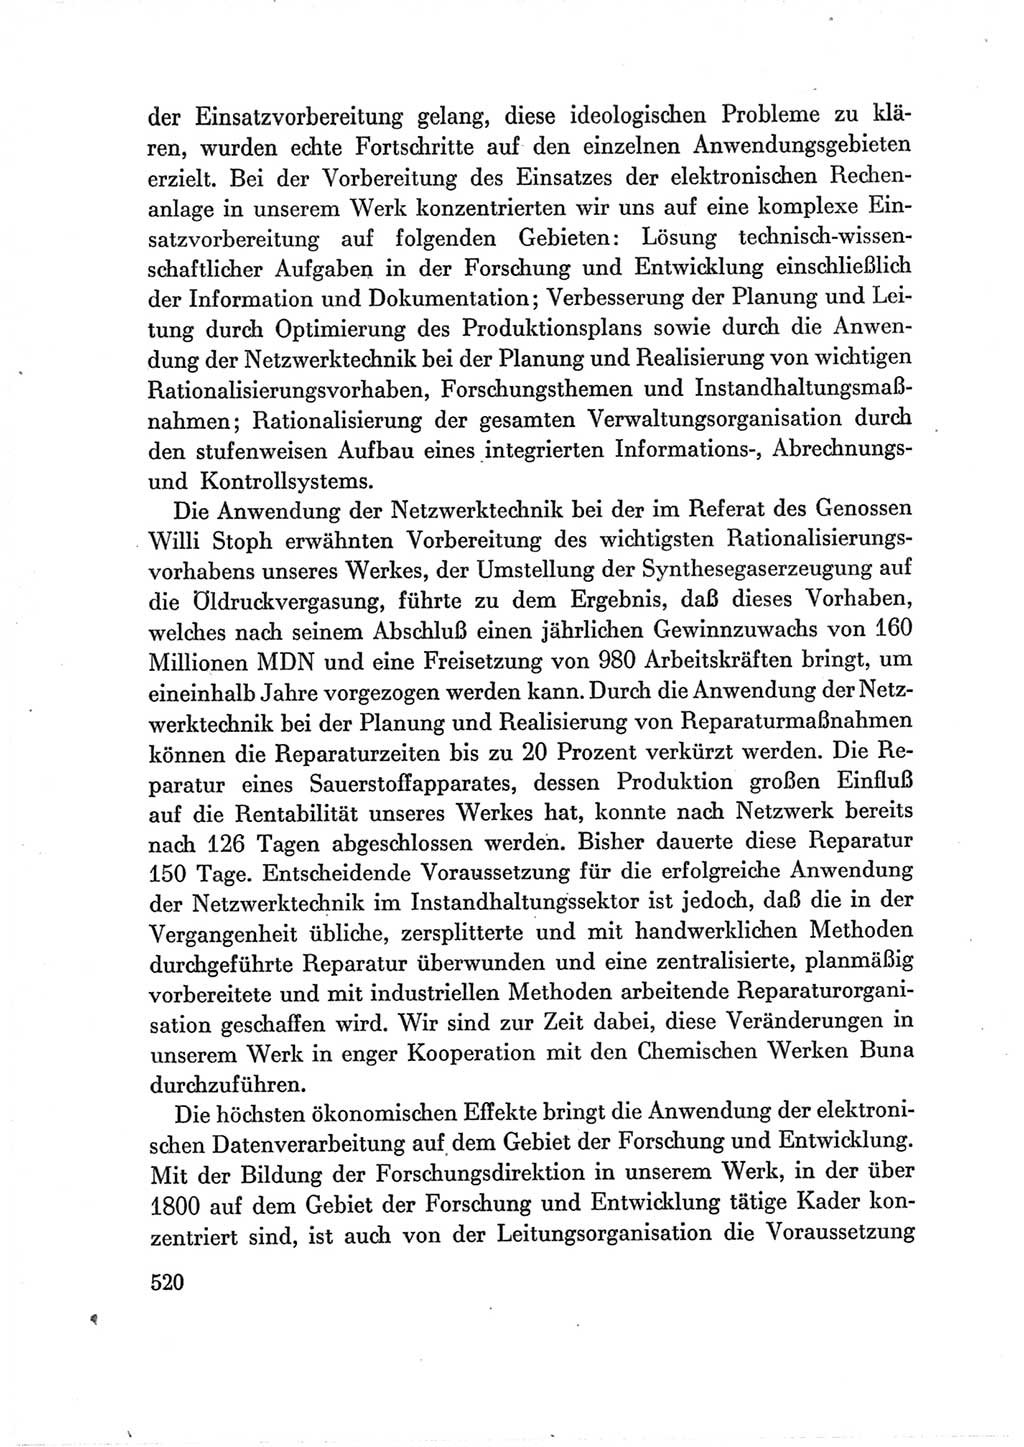 Protokoll der Verhandlungen des Ⅶ. Parteitages der Sozialistischen Einheitspartei Deutschlands (SED) [Deutsche Demokratische Republik (DDR)] 1967, Band Ⅲ, Seite 520 (Prot. Verh. Ⅶ. PT SED DDR 1967, Bd. Ⅲ, S. 520)